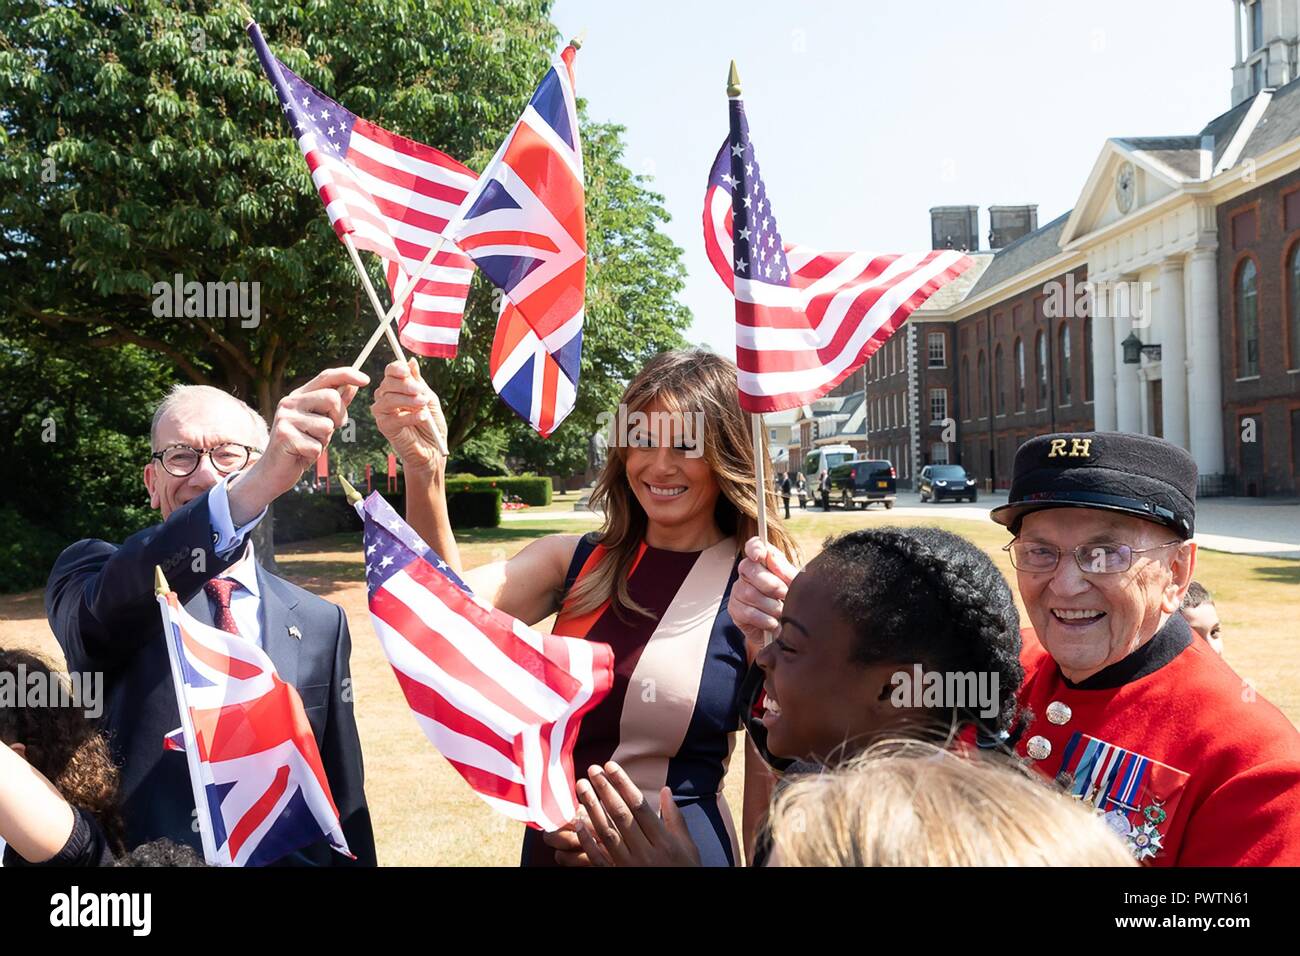 Us-First Lady Melania Trump und Philip kann, Ehemann der britische Premierminister Theresa May, Wave britische und amerikanische Flaggen bei einem Besuch des Royal Hospital Chelsea am 13. Juli 2018 in London, Vereinigtes Königreich. Stockfoto